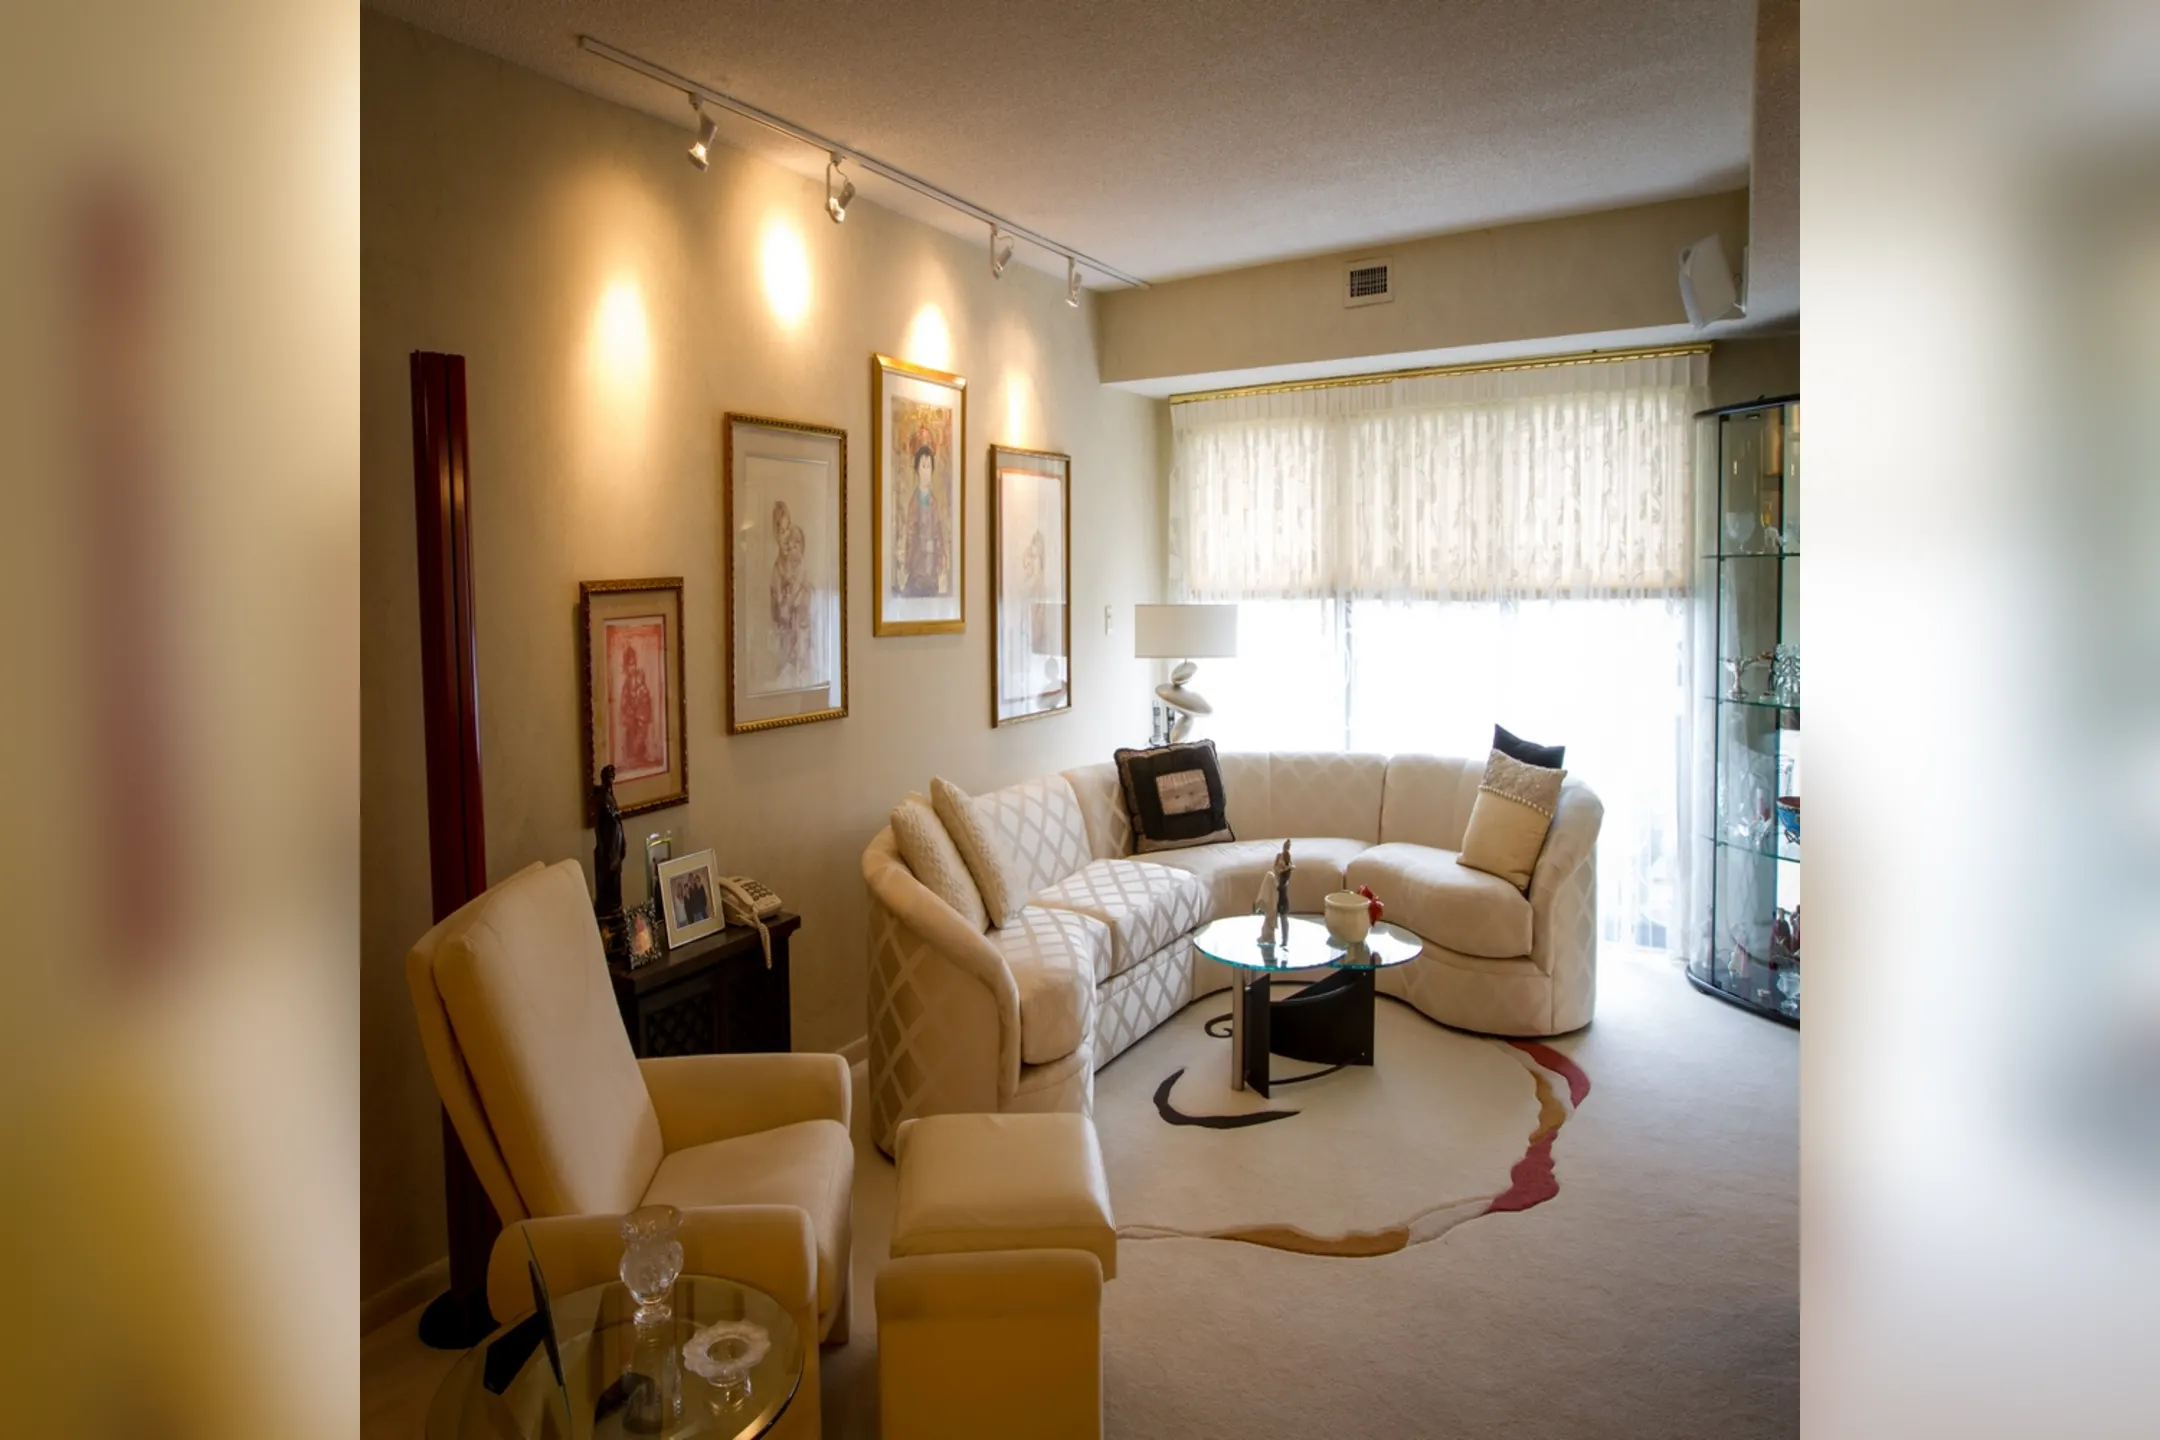 Living Room - Atrium Apartments - Beachwood, OH